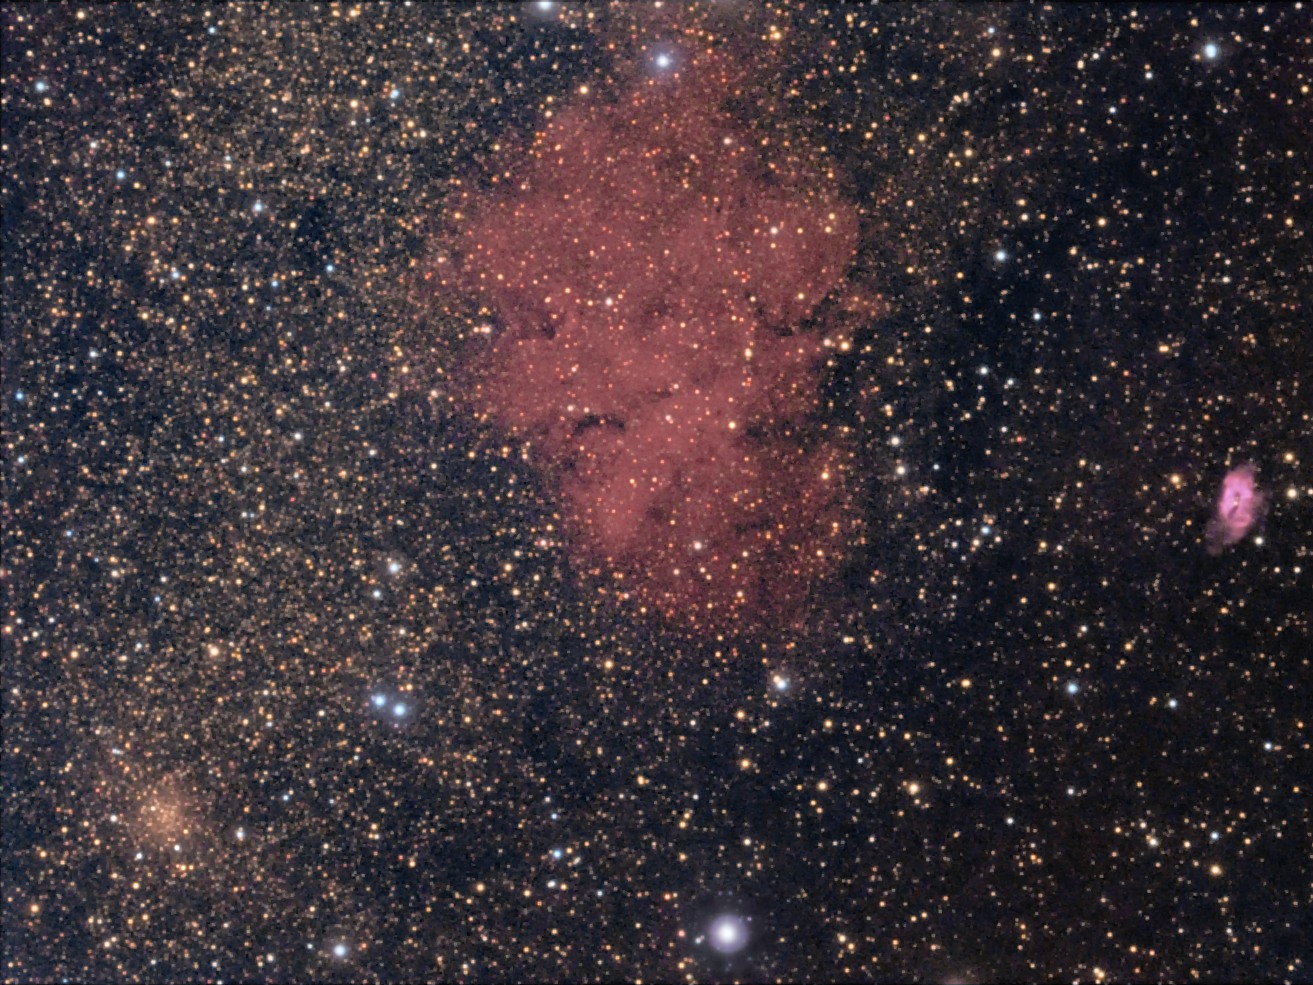 Sharpless 2-72 / Sharpless 2-71 / NGC 6749